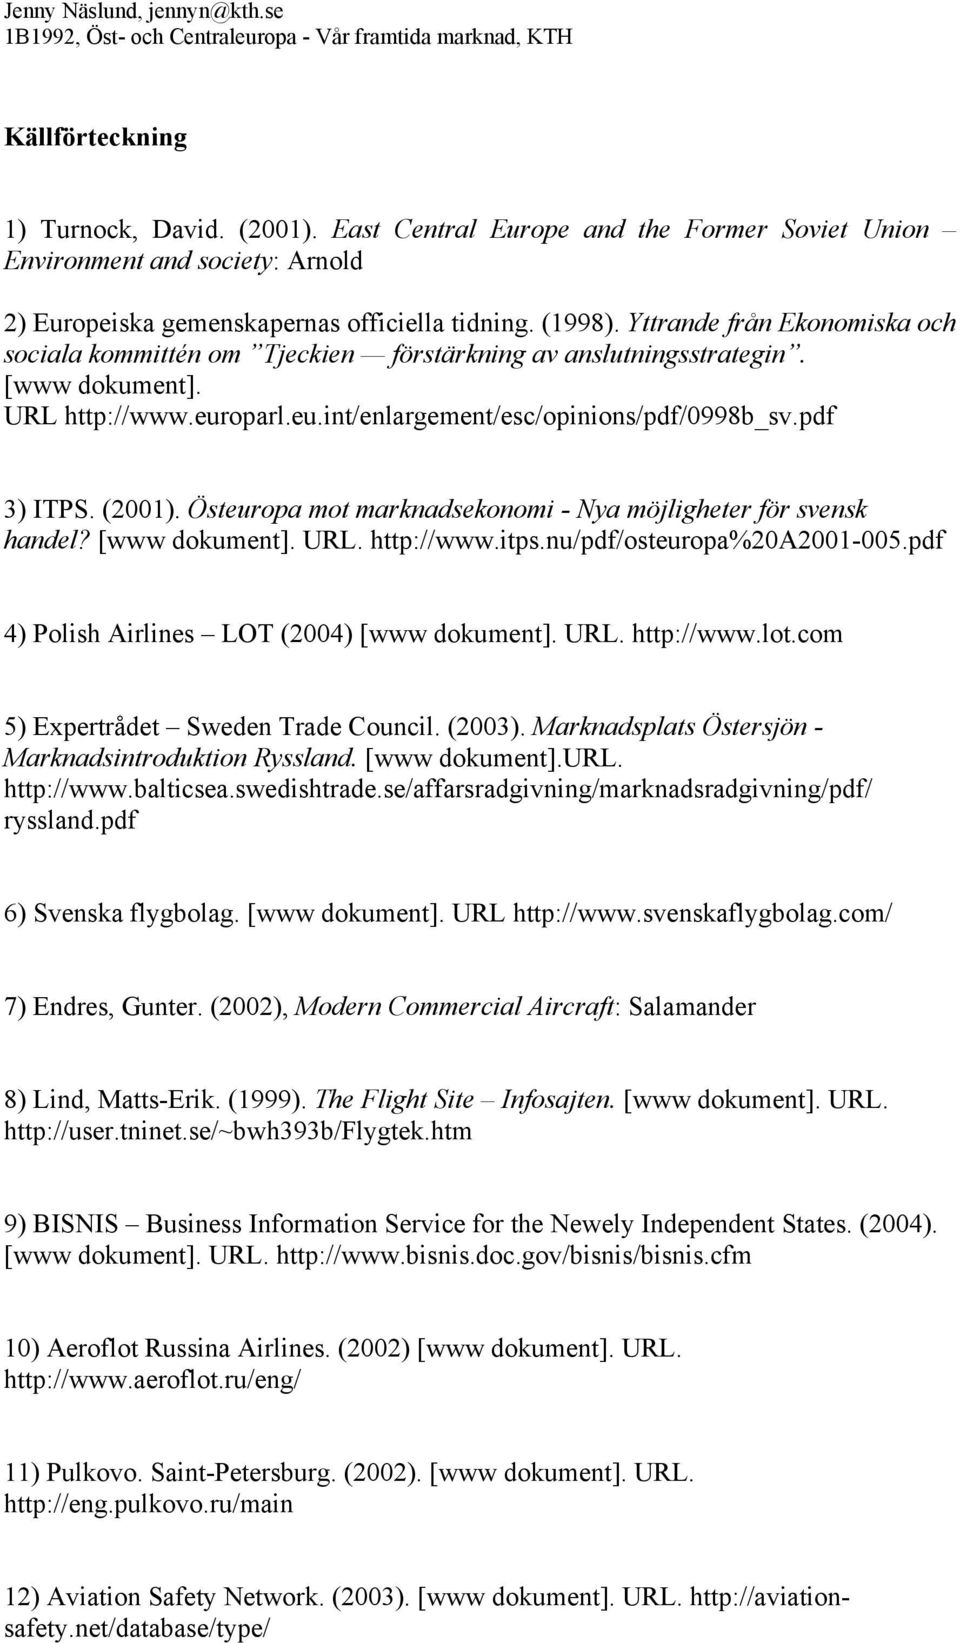 (2001). Östeuropa mot marknadsekonomi - Nya möjligheter för svensk handel? [www dokument]. URL. http://www.itps.nu/pdf/osteuropa%20a2001-005.pdf 4) Polish Airlines LOT (2004) [www dokument]. URL. http://www.lot.